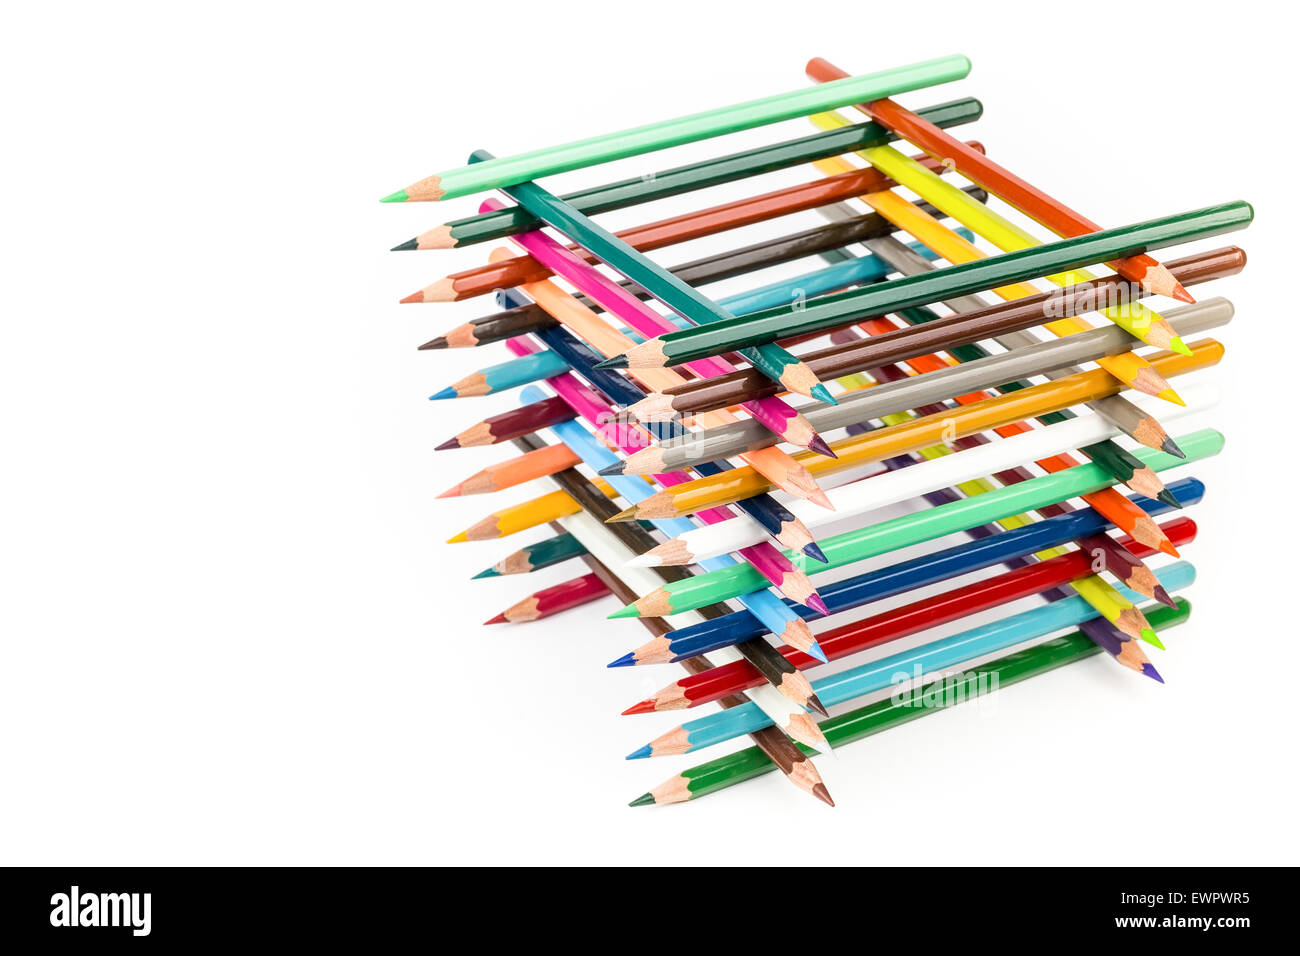 Construit square construction de divers crayons de couleur isolé sur fond blanc Banque D'Images